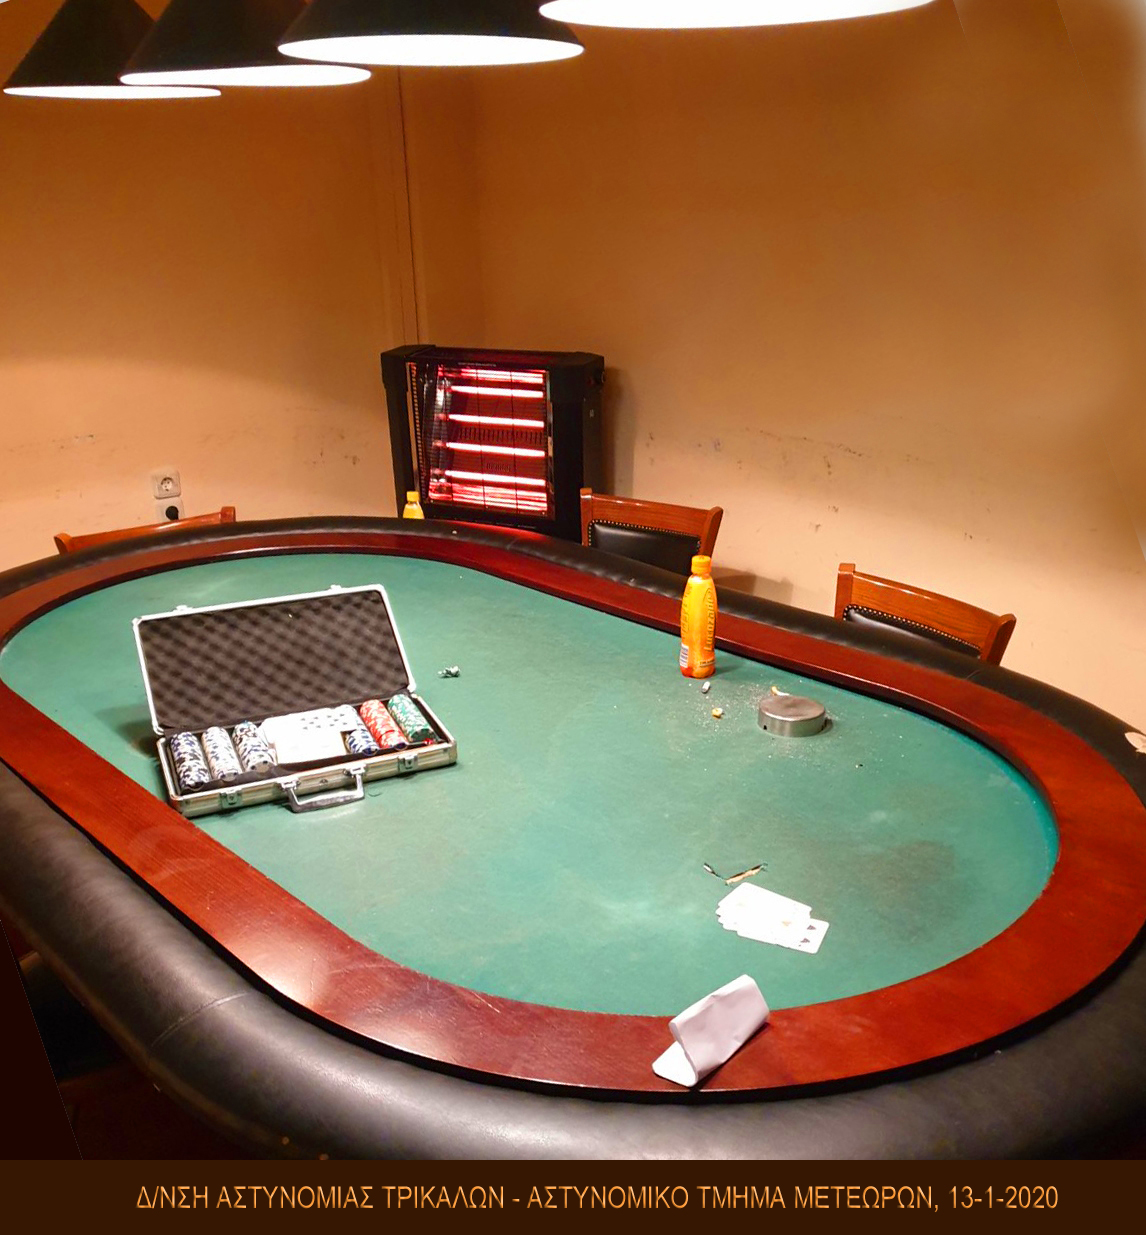 Εξι συλλήψεις για παράνομο πόκερ στην Καλαμπάκα 